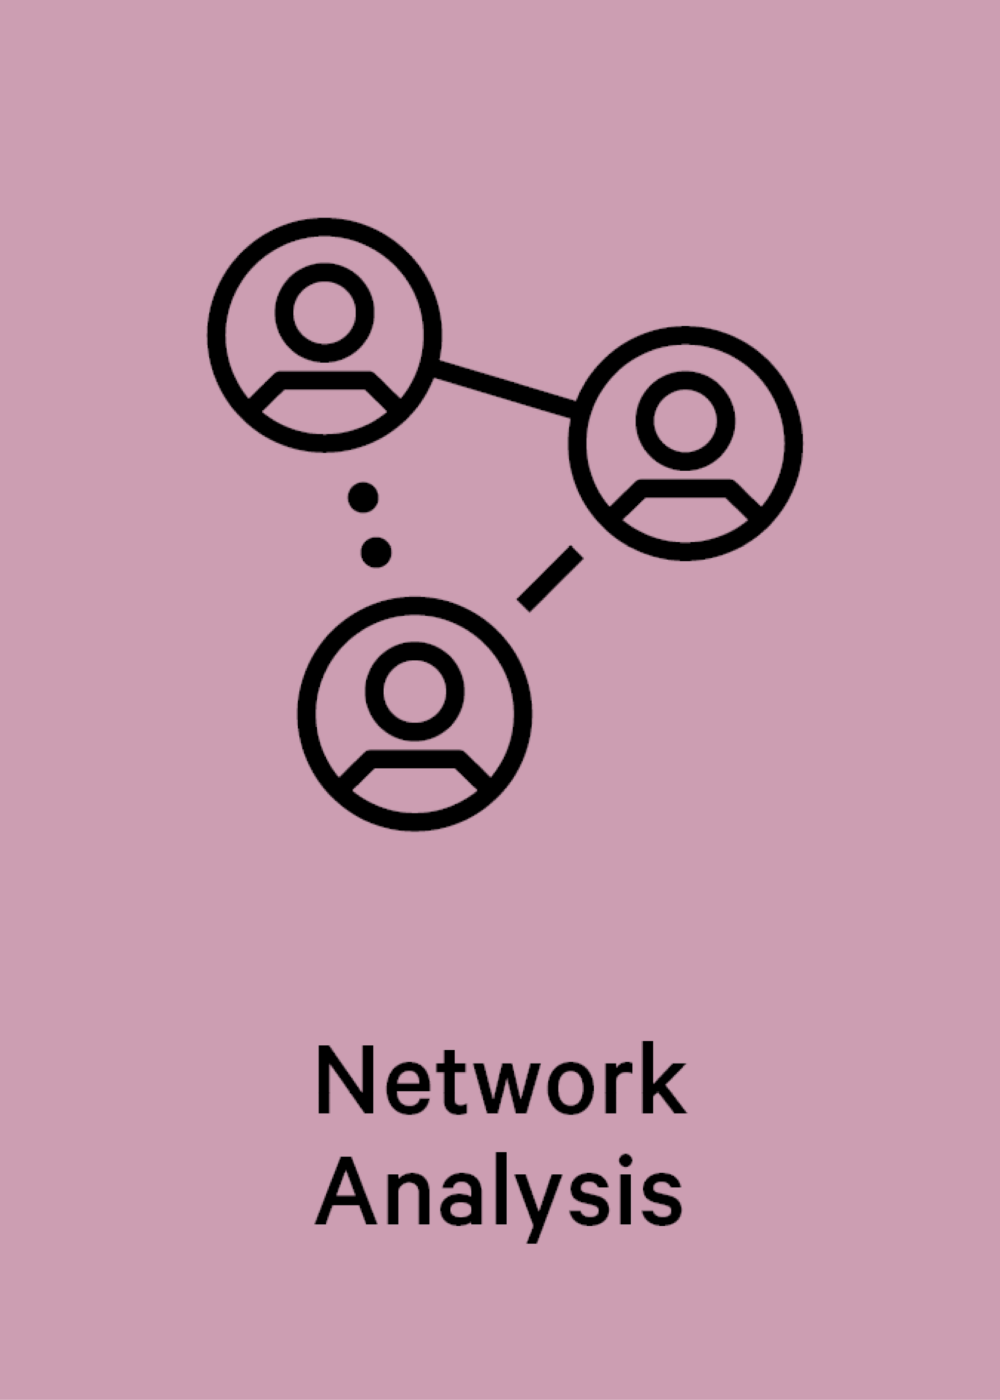 Network Analysis News Teaser 1200x670